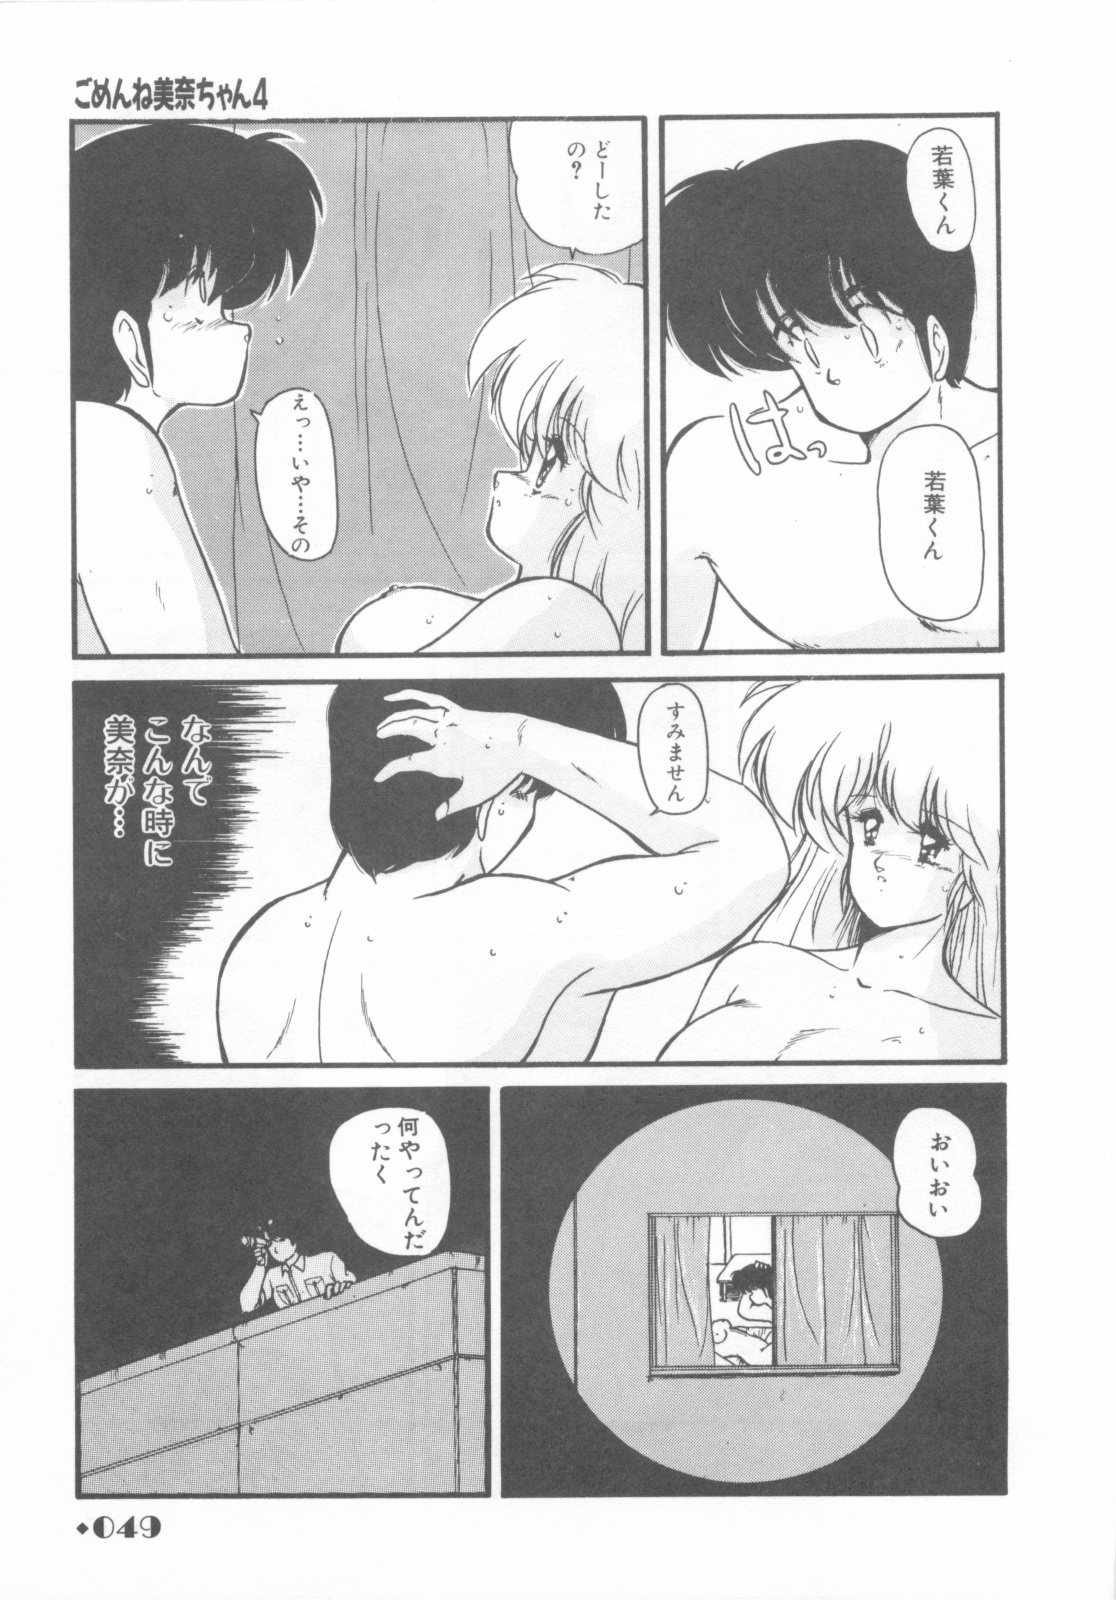 [Makuwa] Gomenne Mina-chan 1 page 51 full